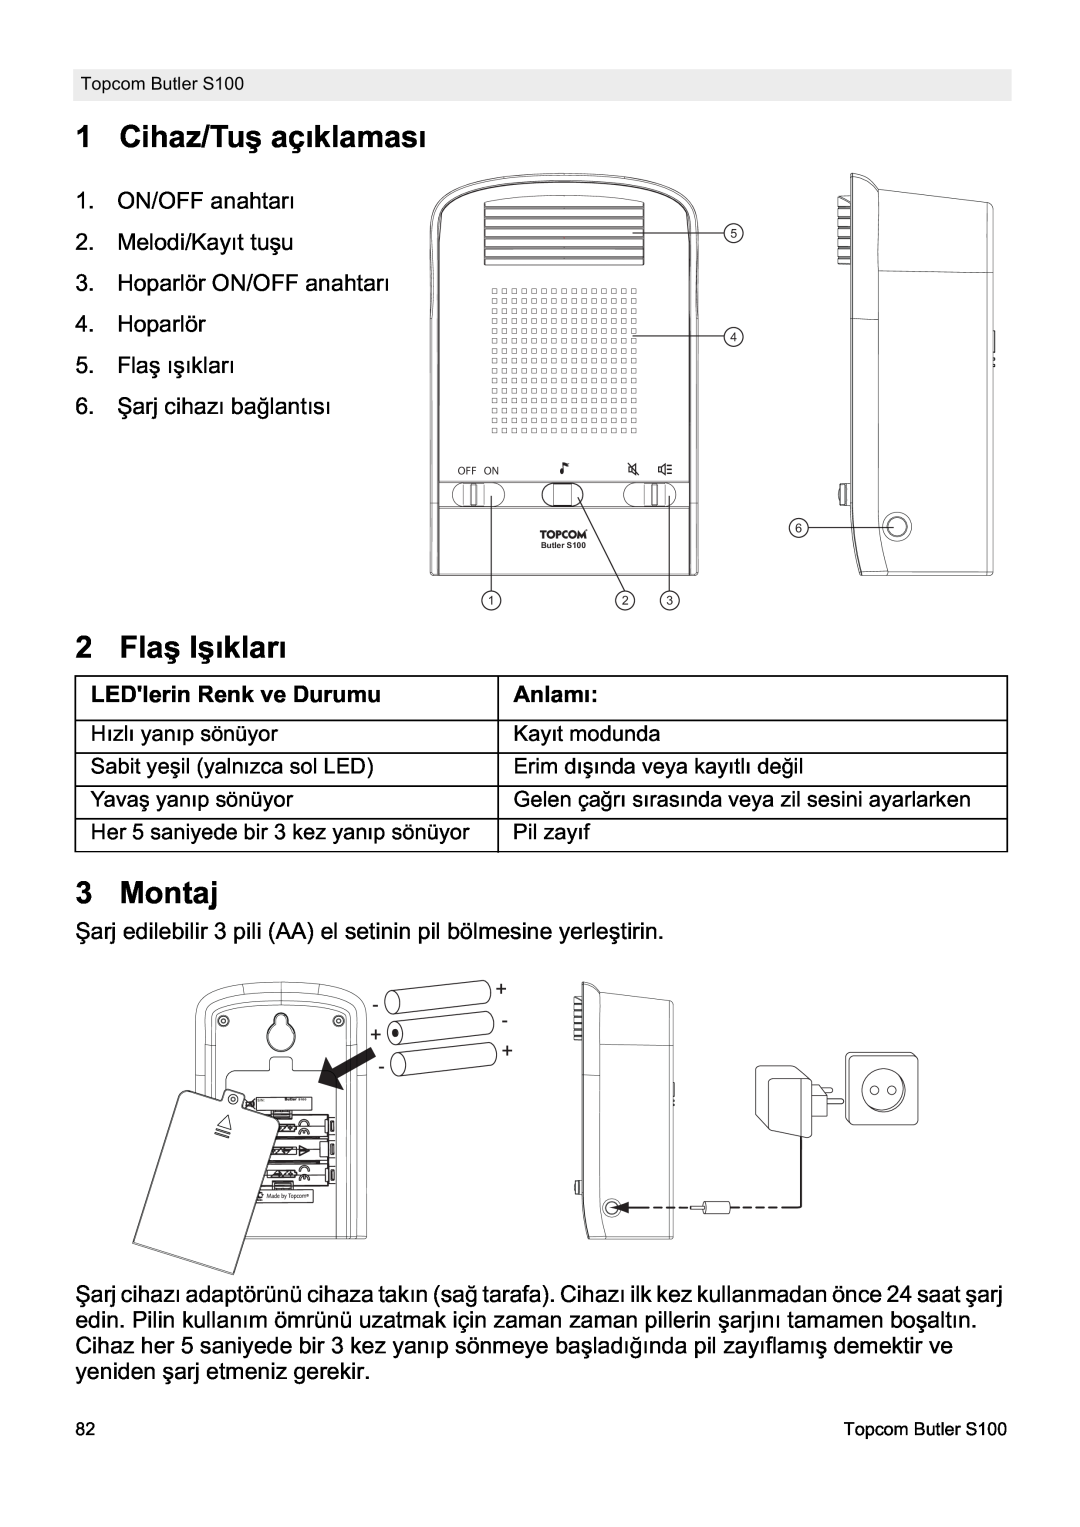 Topcom S100 manual do utilizador Cihaz/Tuú açıklaması, 2 Flaú Iúıkları, Montaj, LEDlerin Renk ve Durumu, Anlamı 